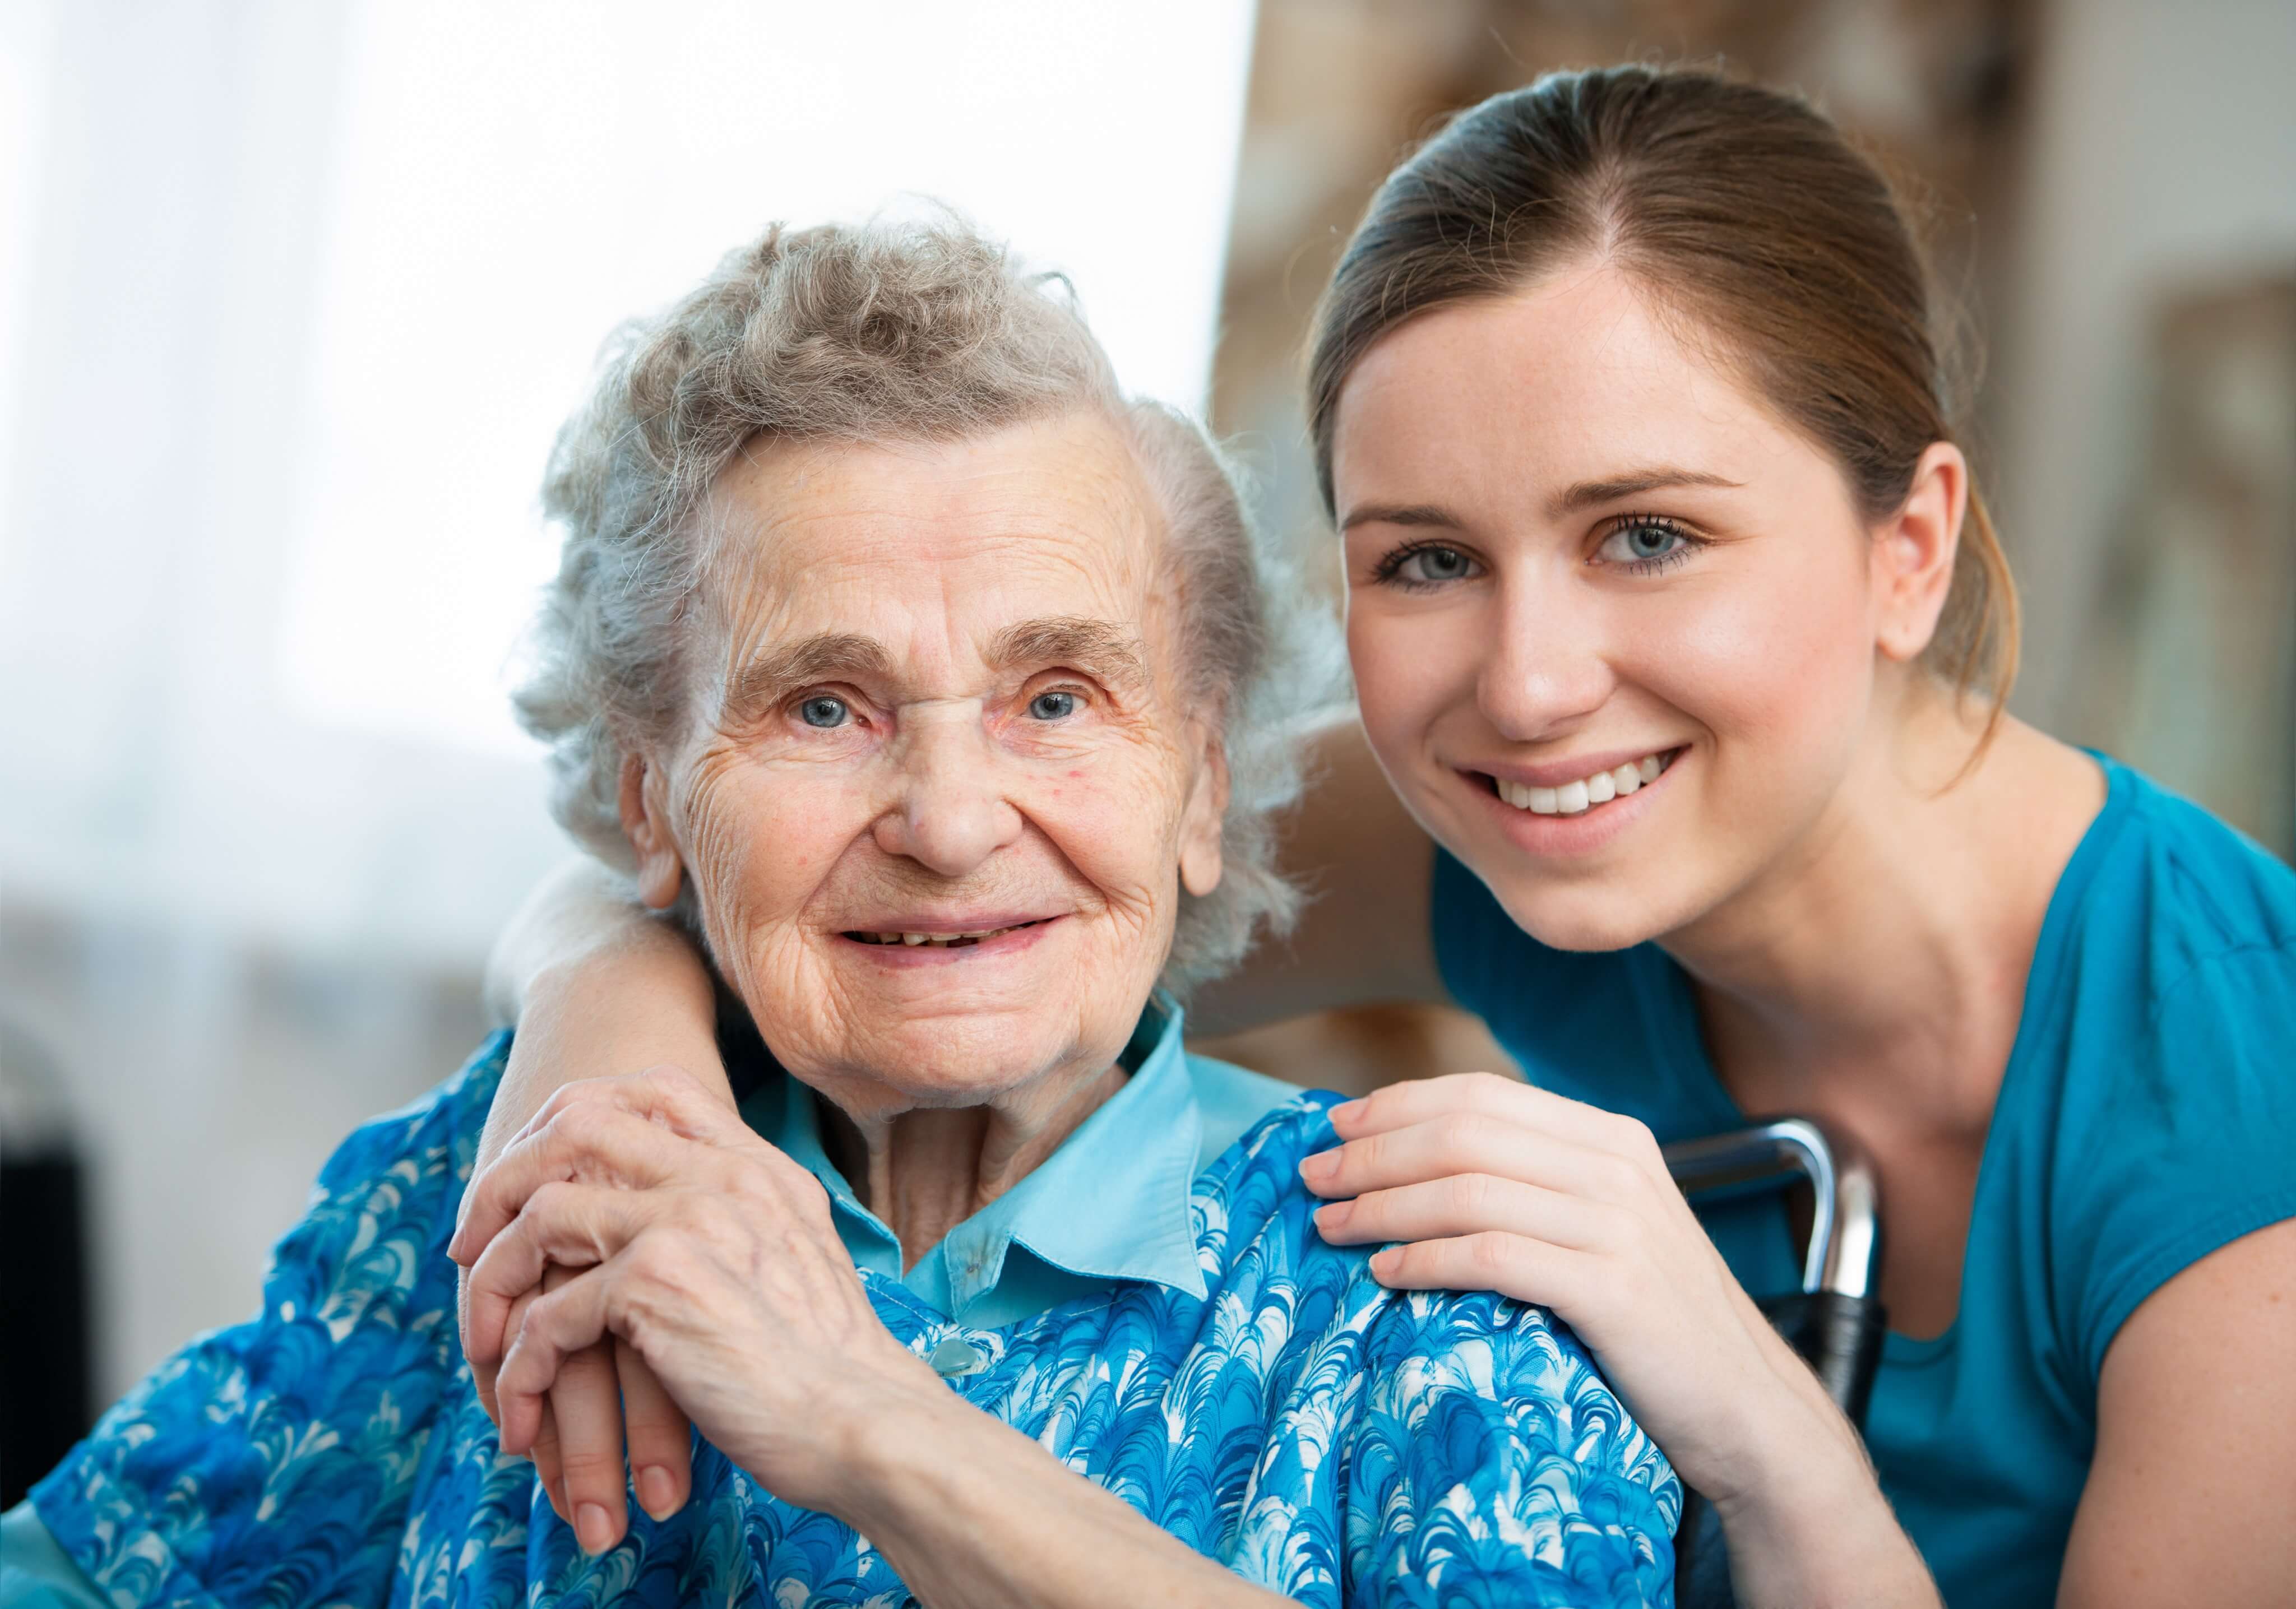 Personnes âgées et perte d’autonomie : nos conseils pour les aider